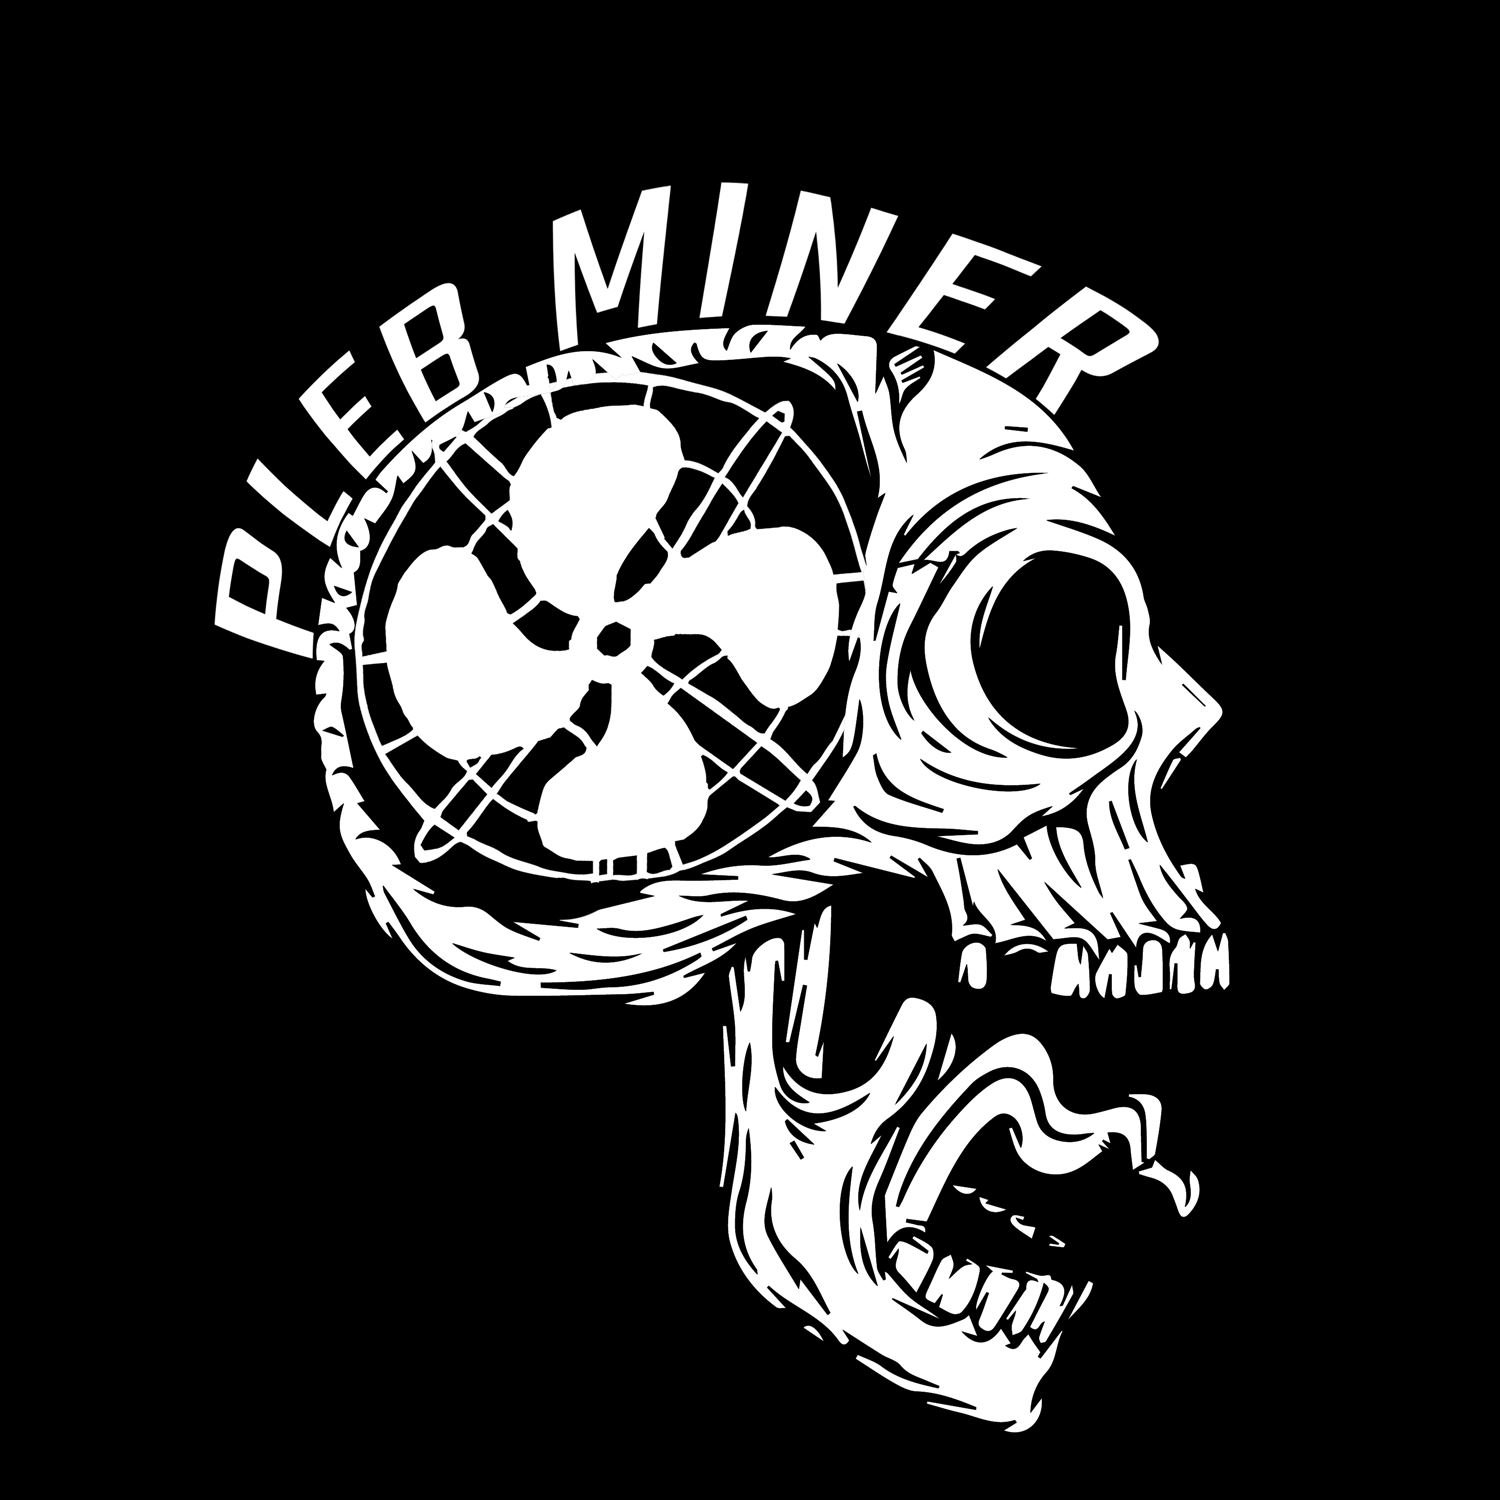 Pleb Miner Redux – What is a Bitcoin Miner?